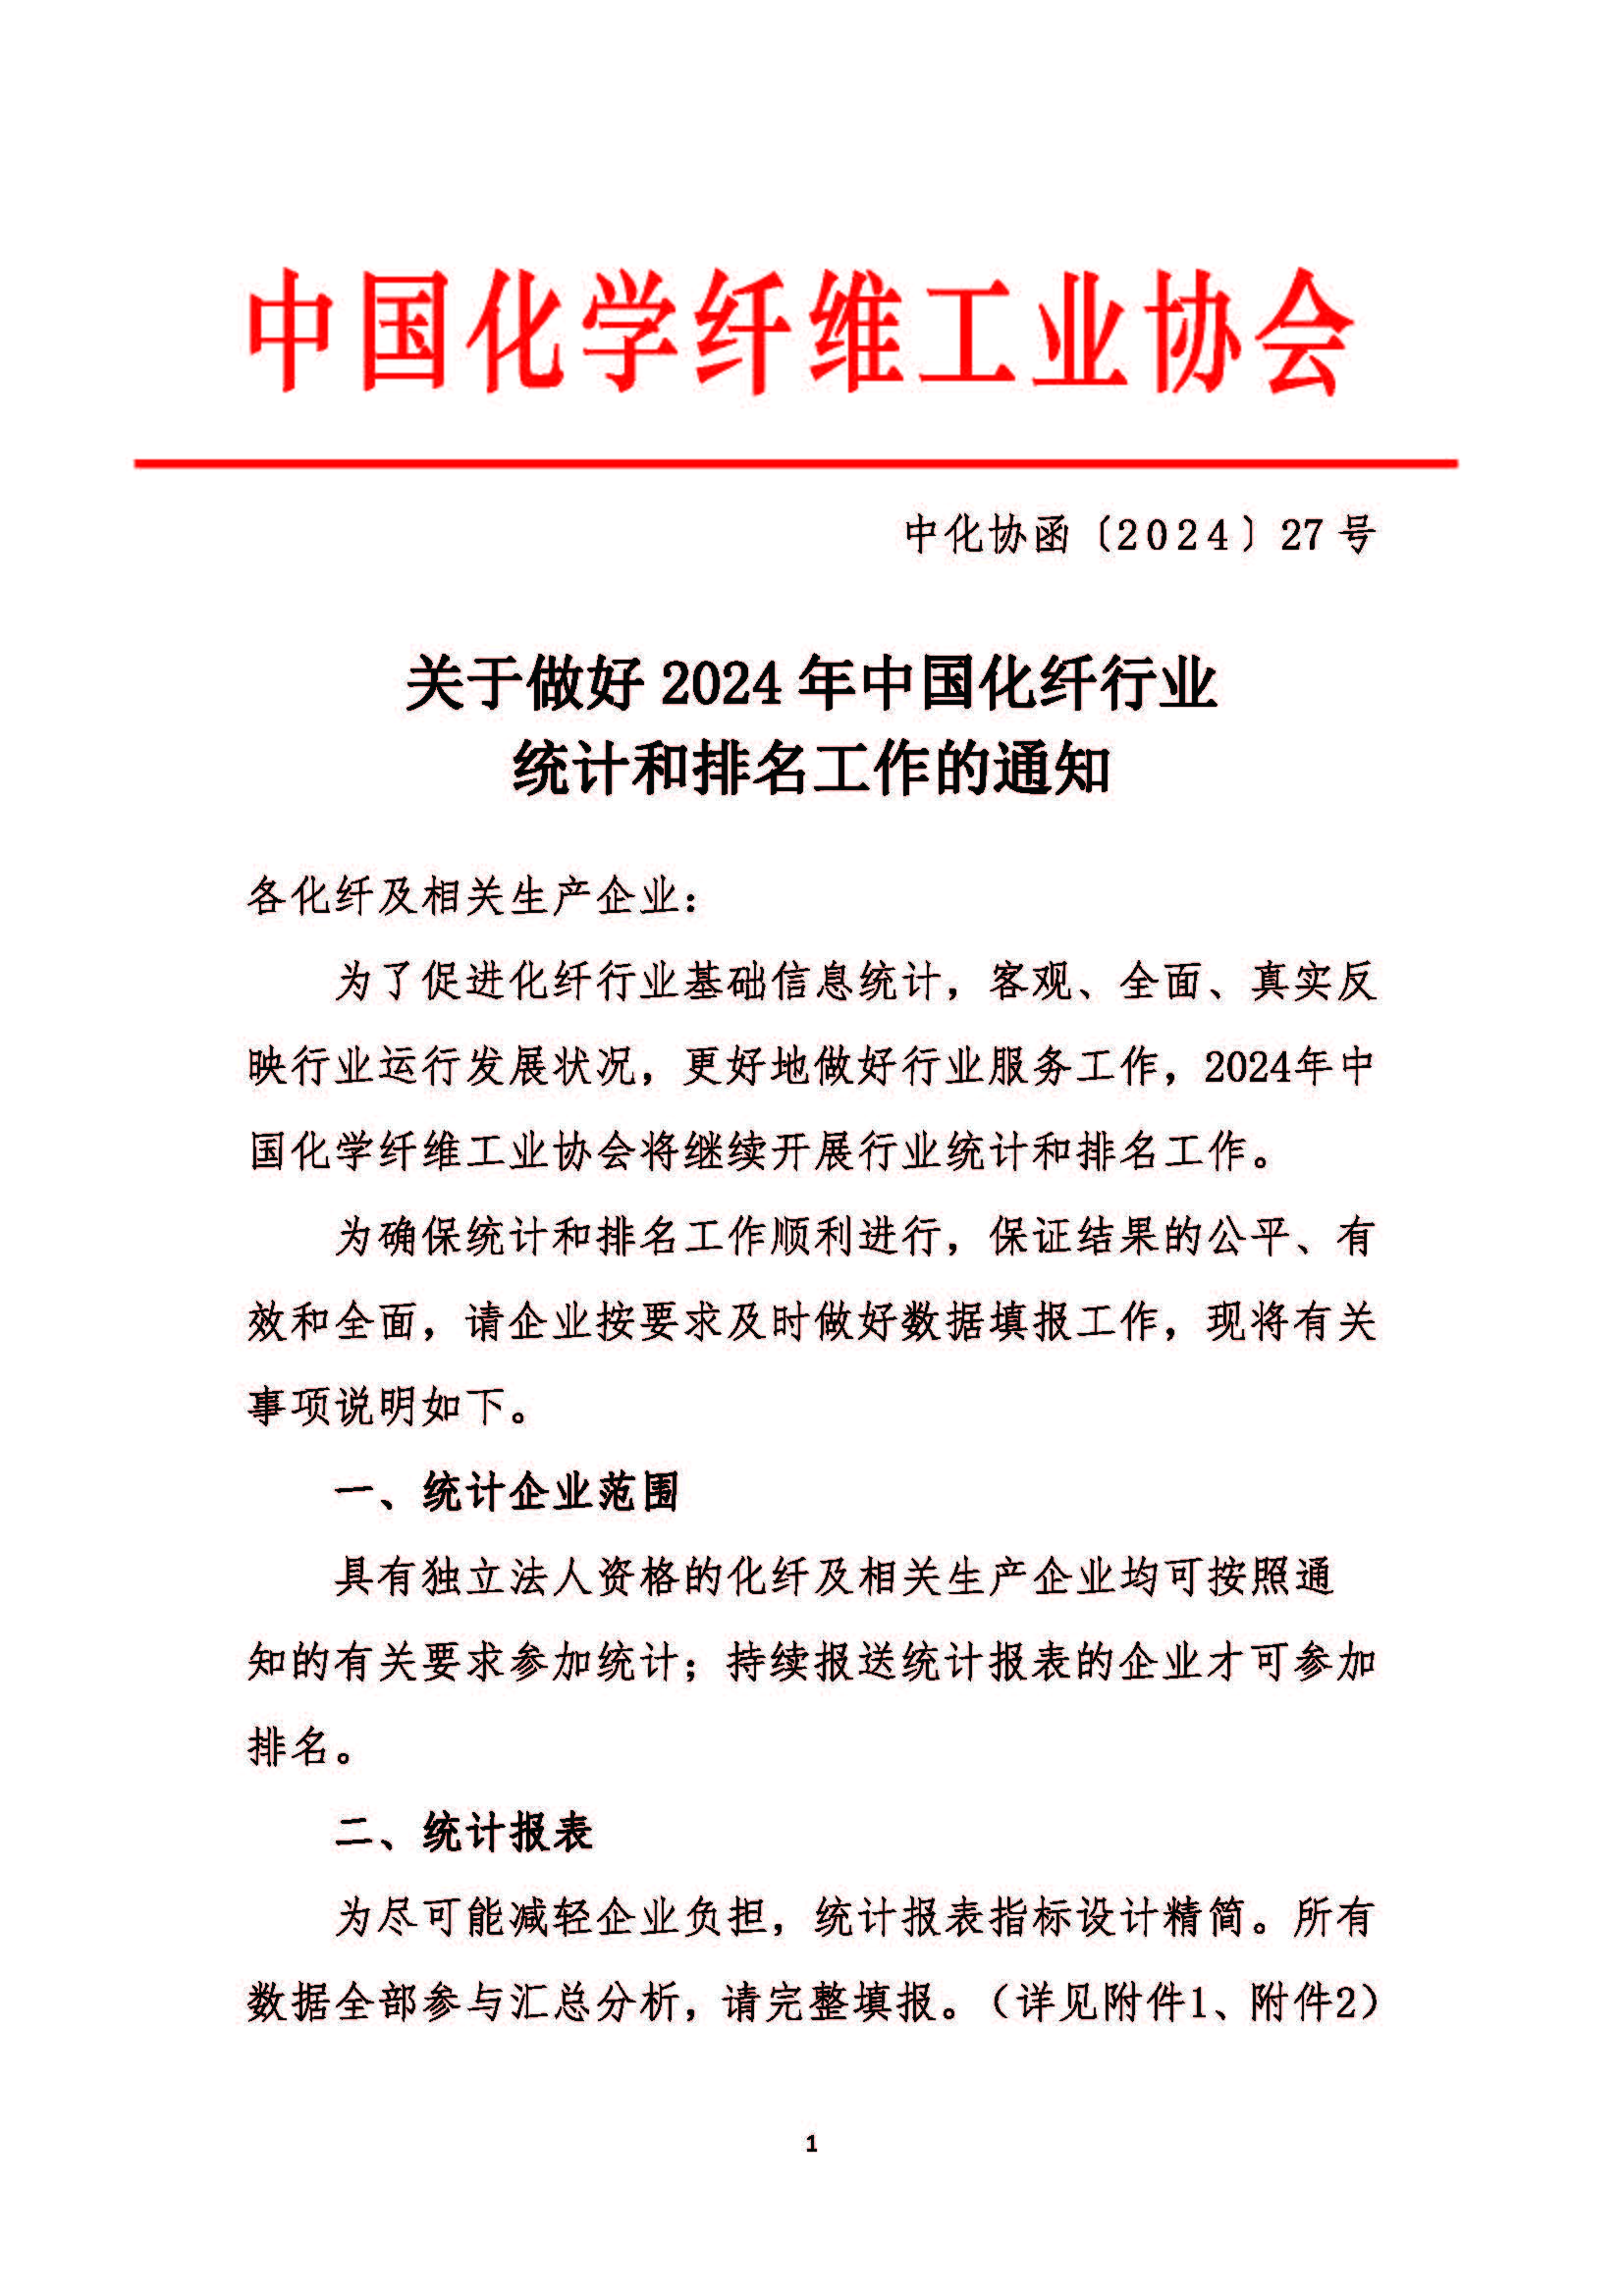 关于做好2024年中国化纤行业统计和排名工作的通知_页面_1.jpg